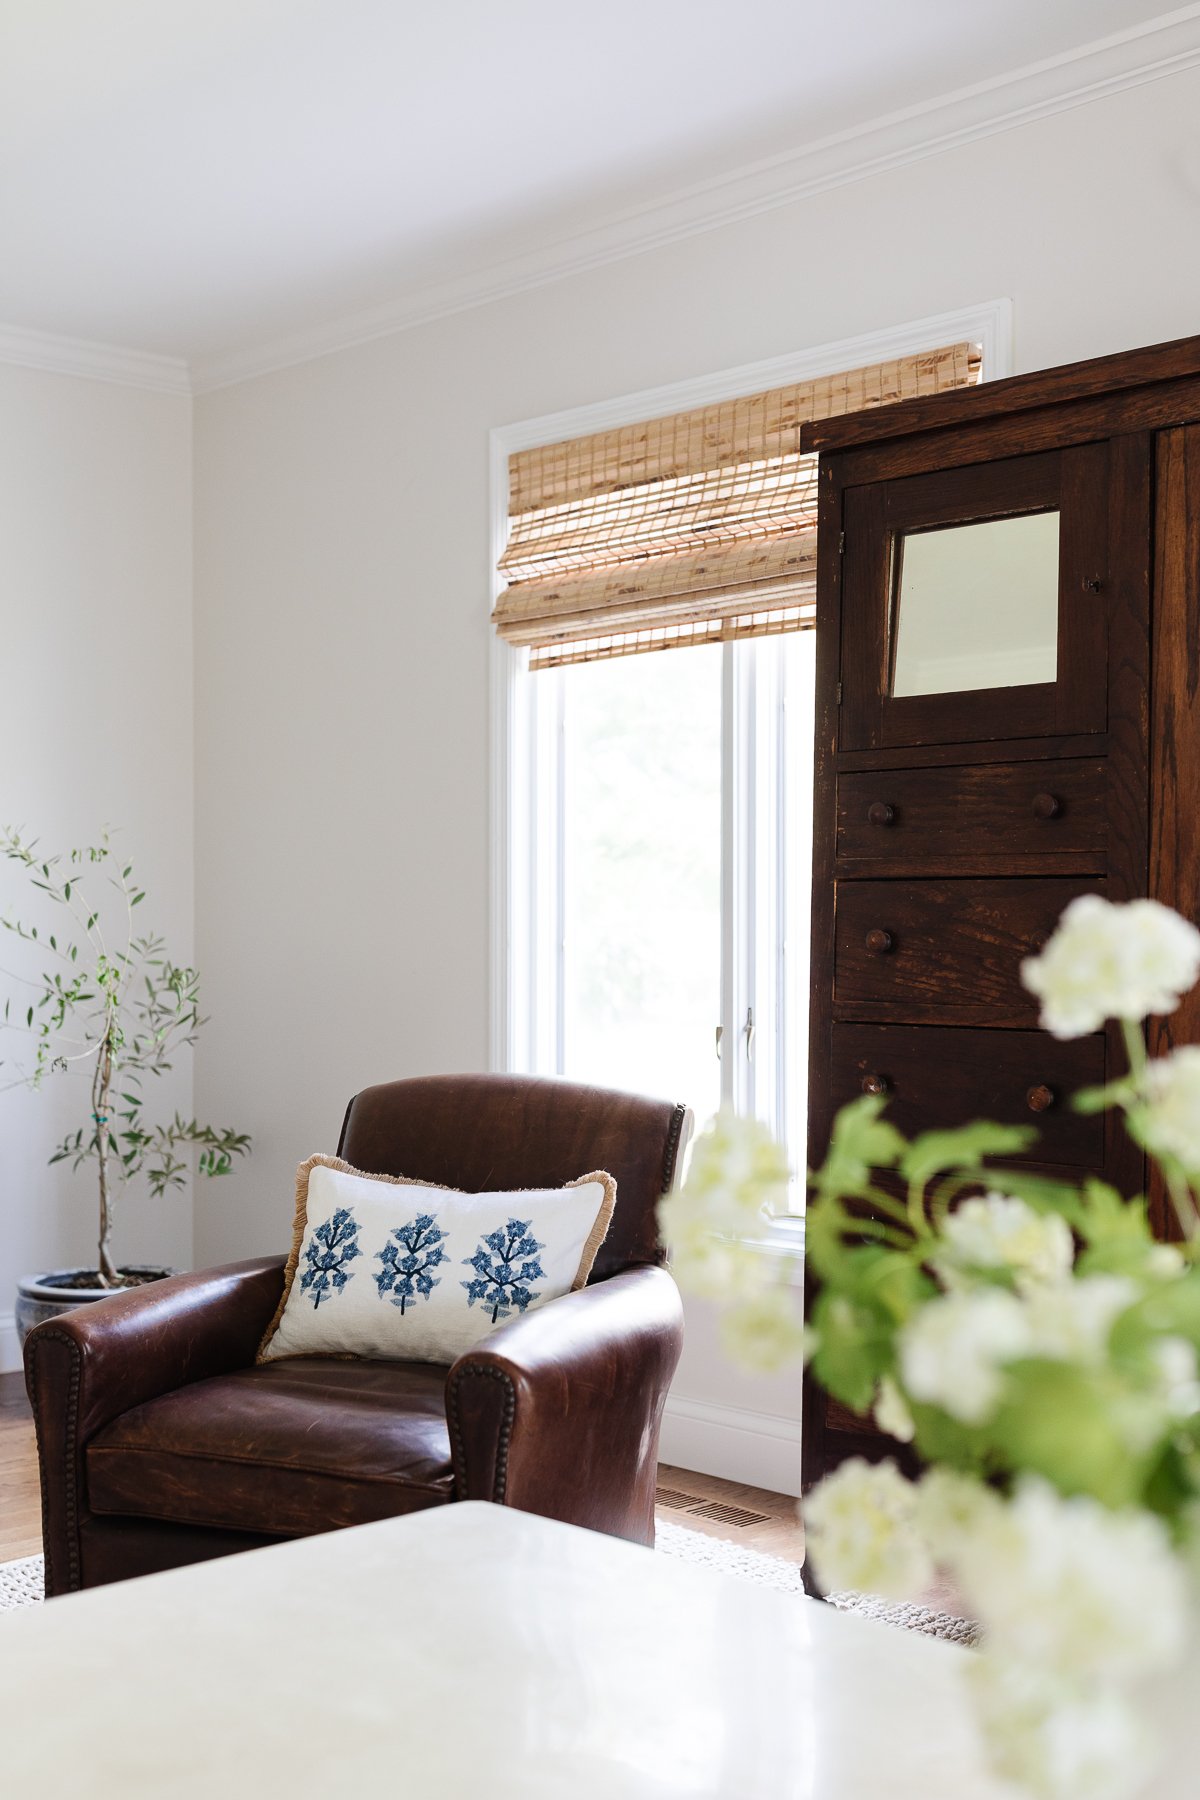 Una habitación familiar con un armario antiguo y persianas de bambú.